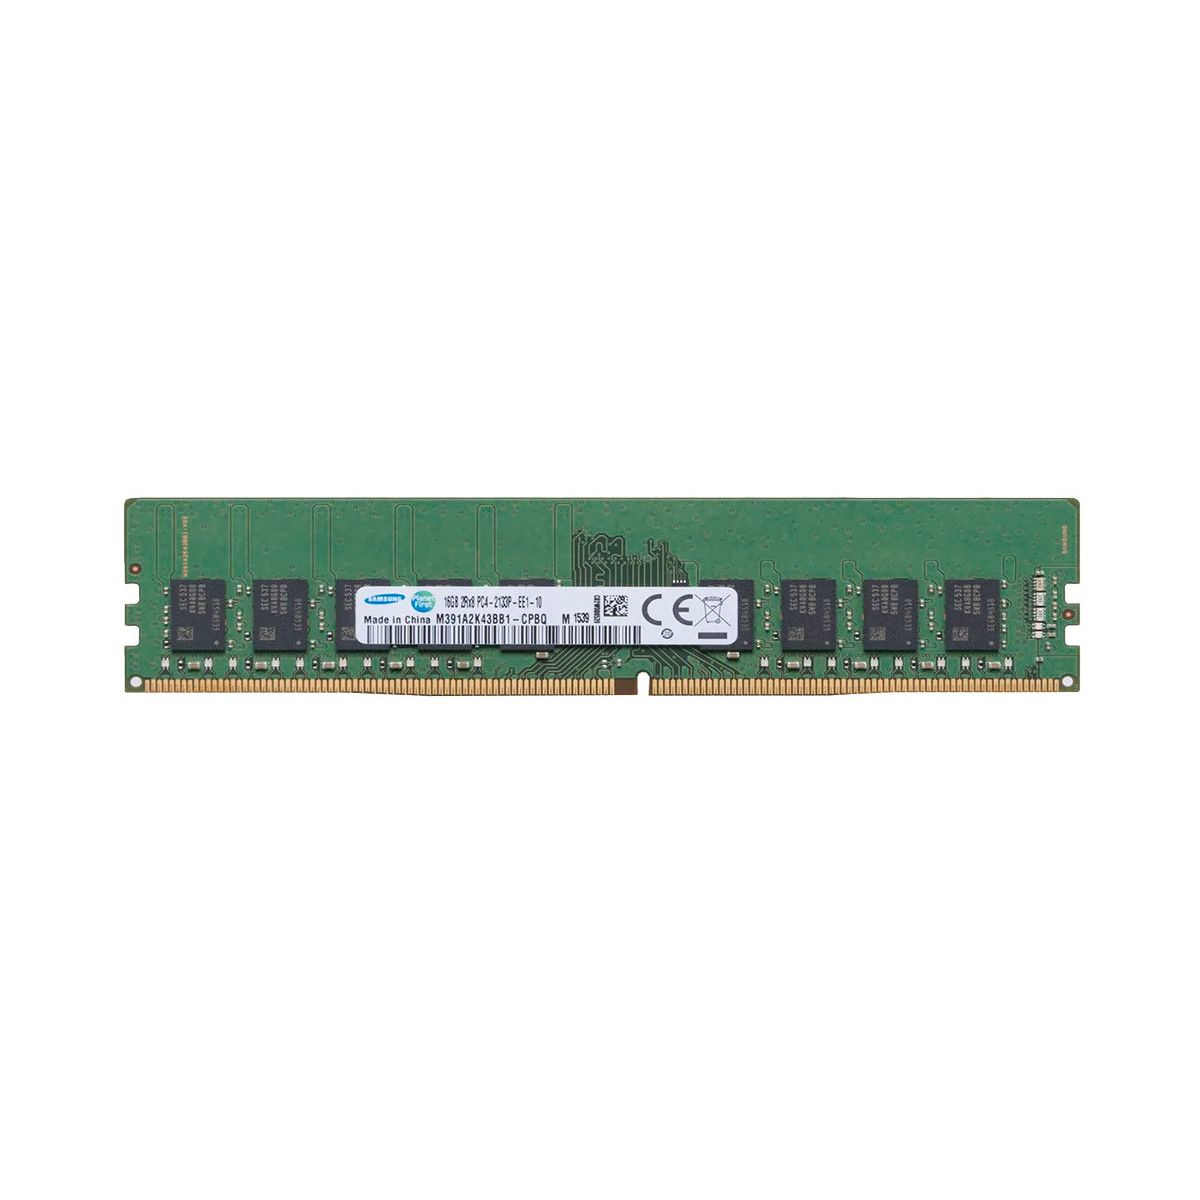 4X70M41718-MS - Memstar 1x 16GB DDR4-2133 ECC UDIMM PC4-17000P-E - Mem-Star compatibel OEM geheugen 1 - Memstar 